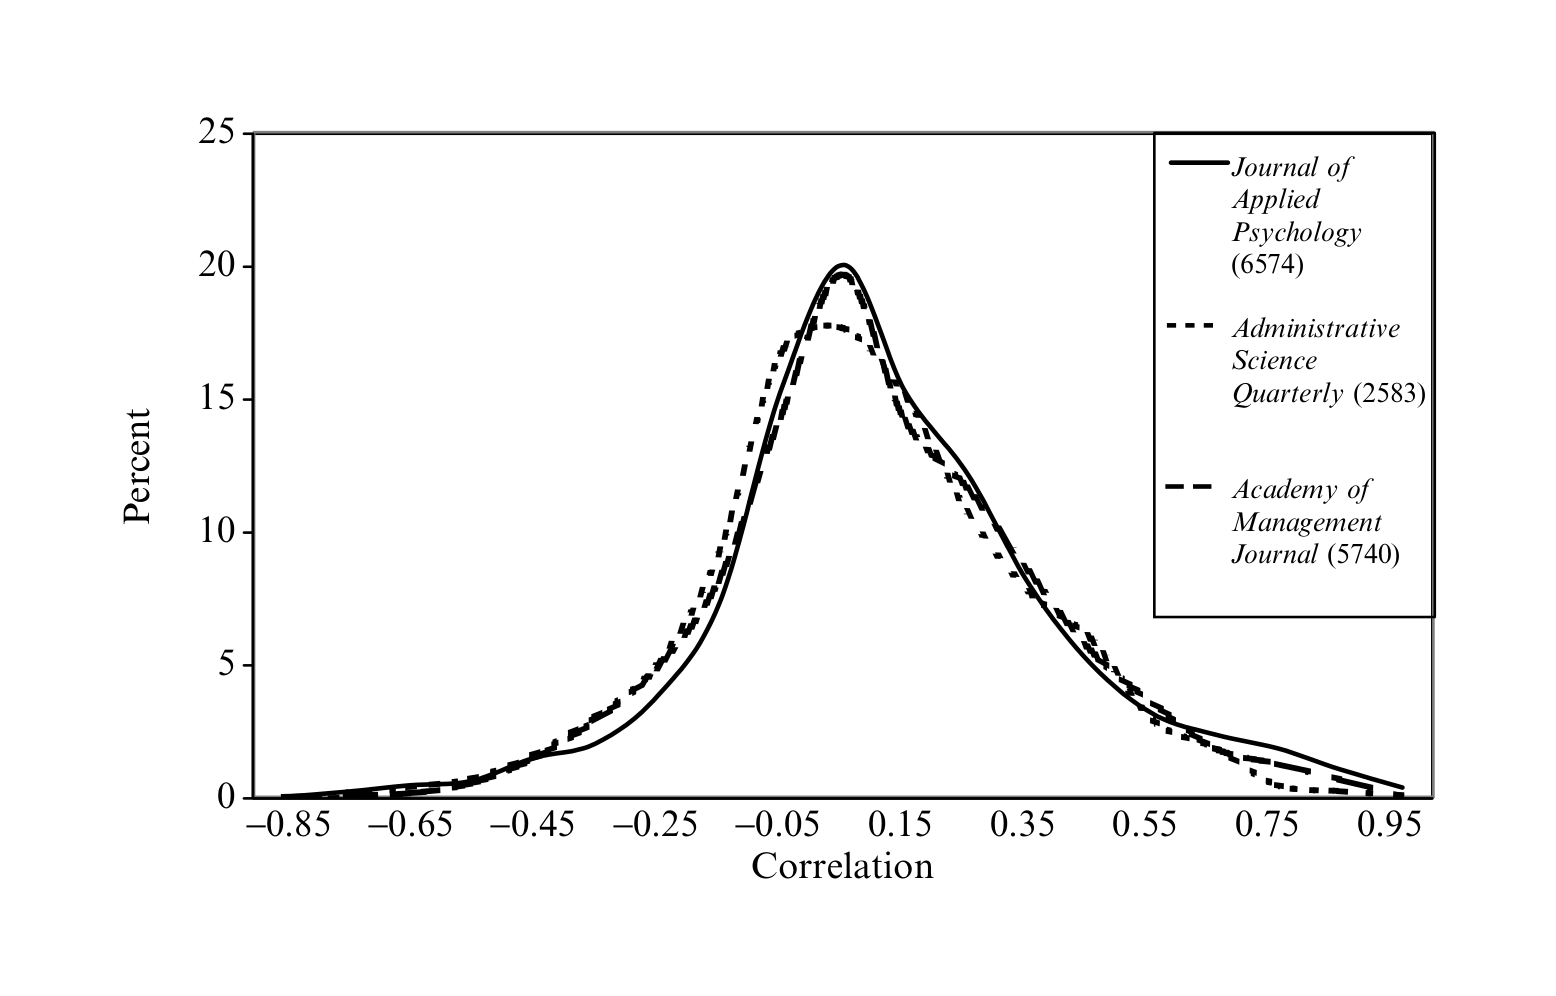 Figure 2.6: Correlations reported in 3 journals